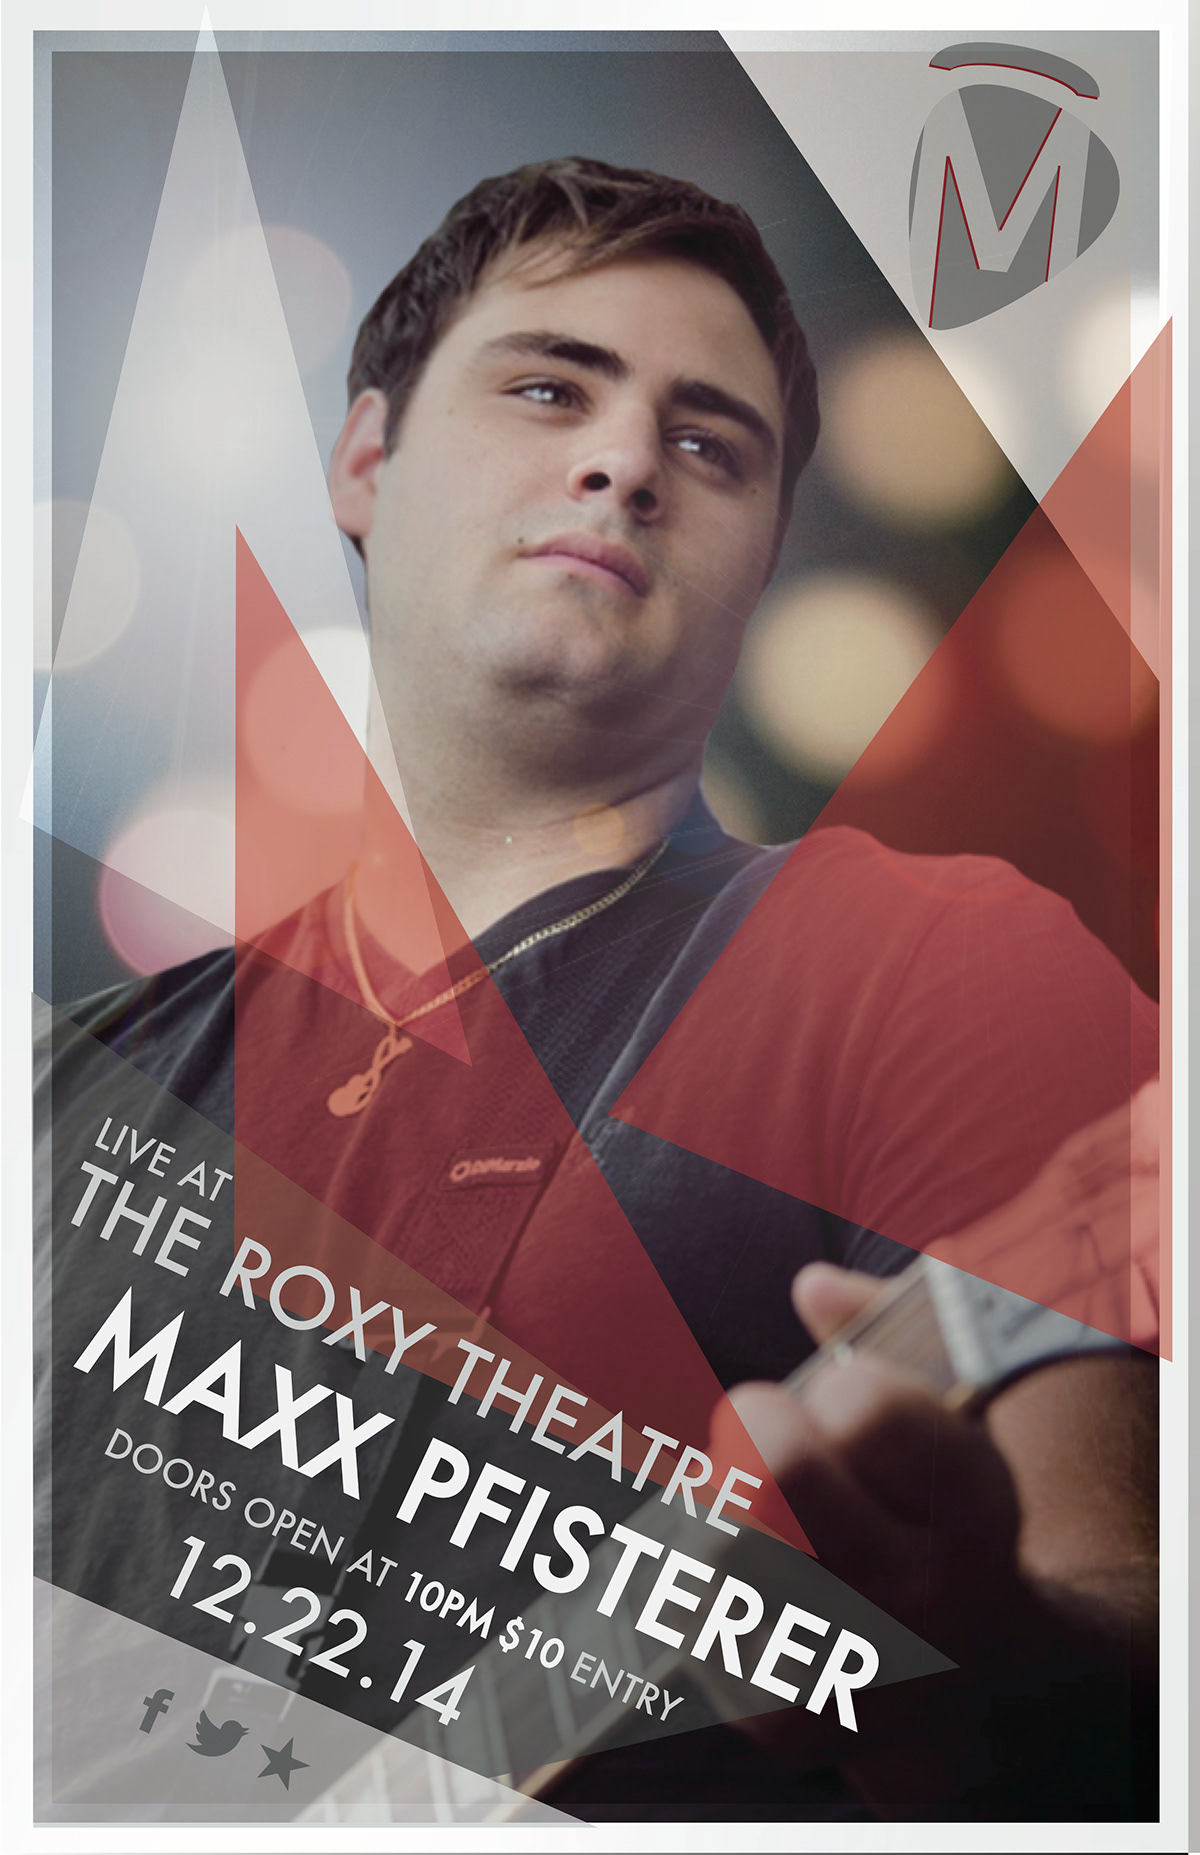 maxxpfisterer musician